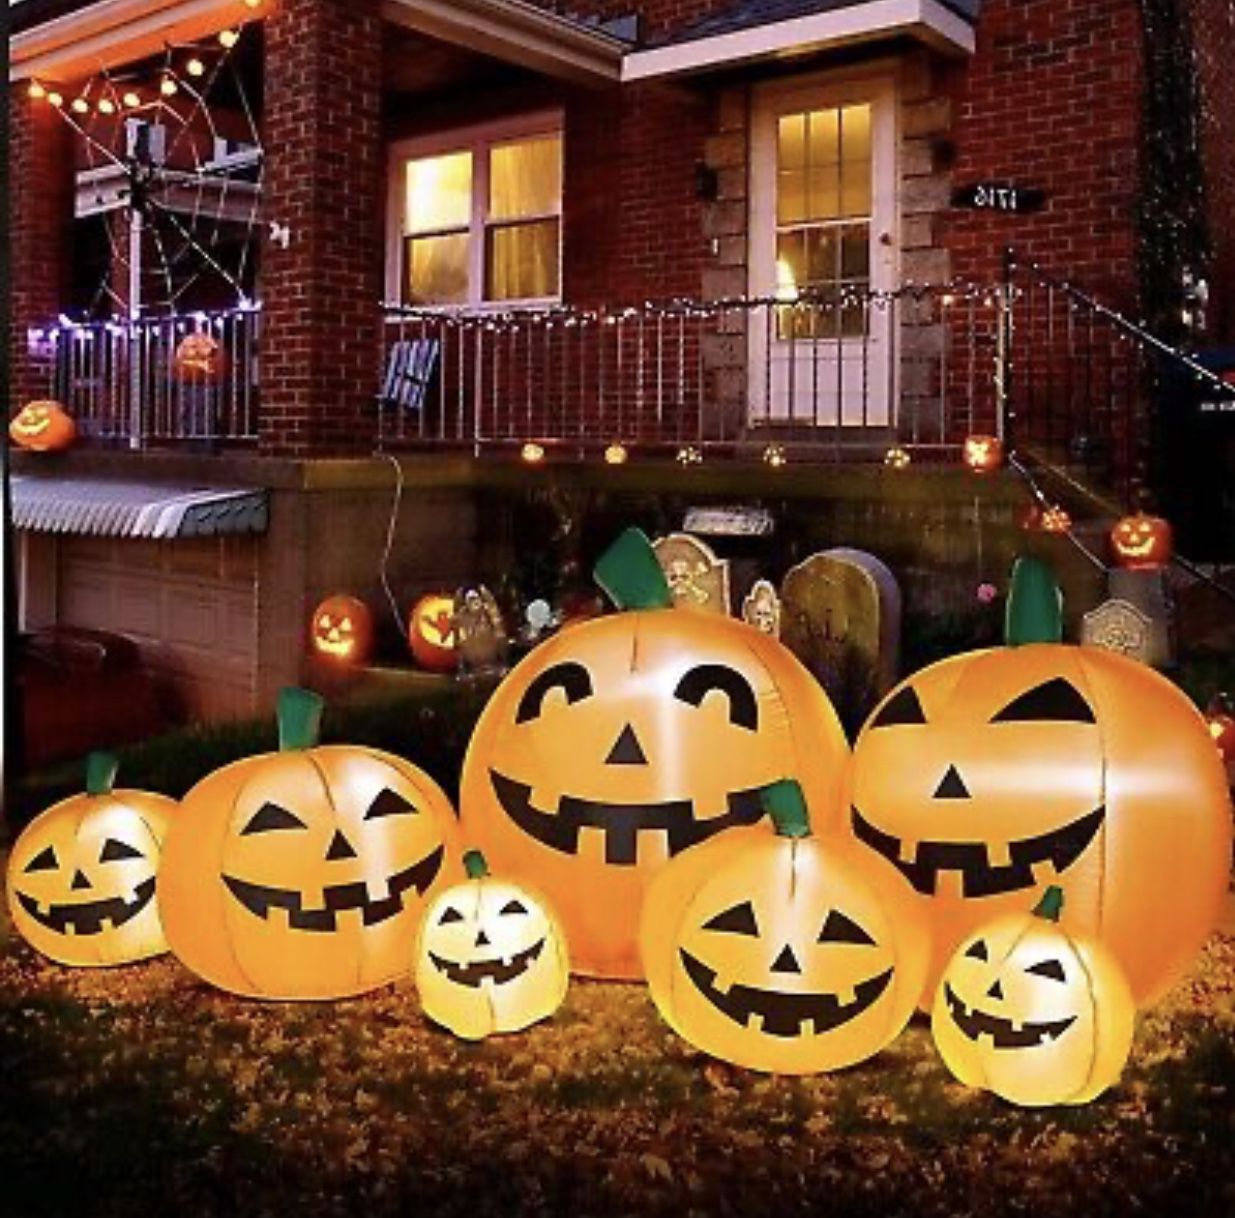  8 Ft Long Halloween Inflatables Pumpkin Decoration, 